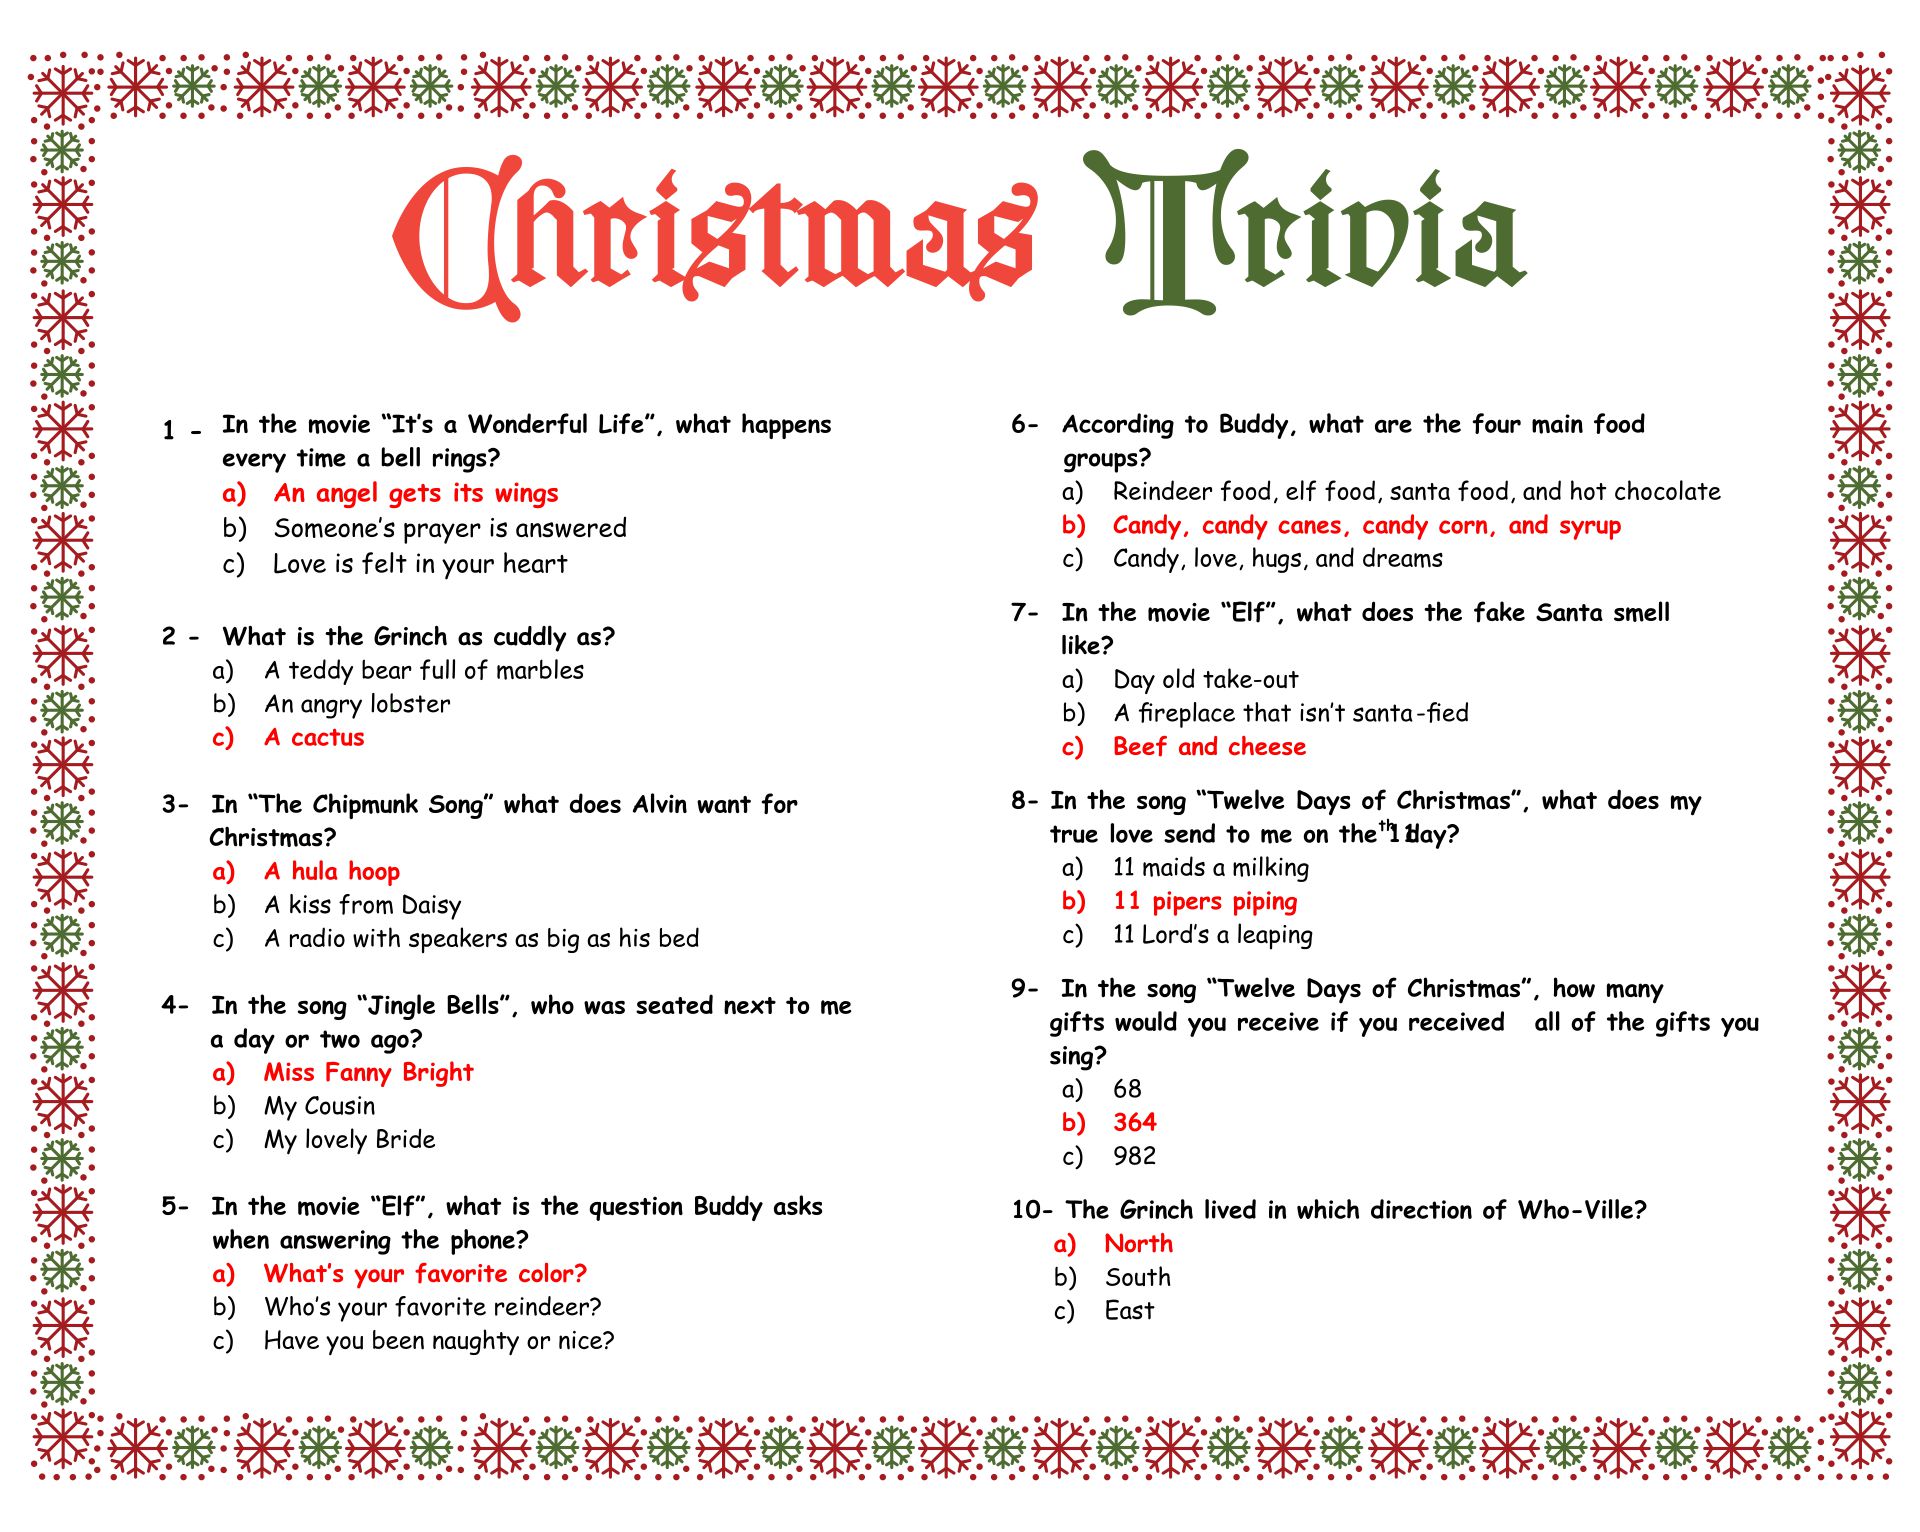 Easy Christmas Trivia Printable